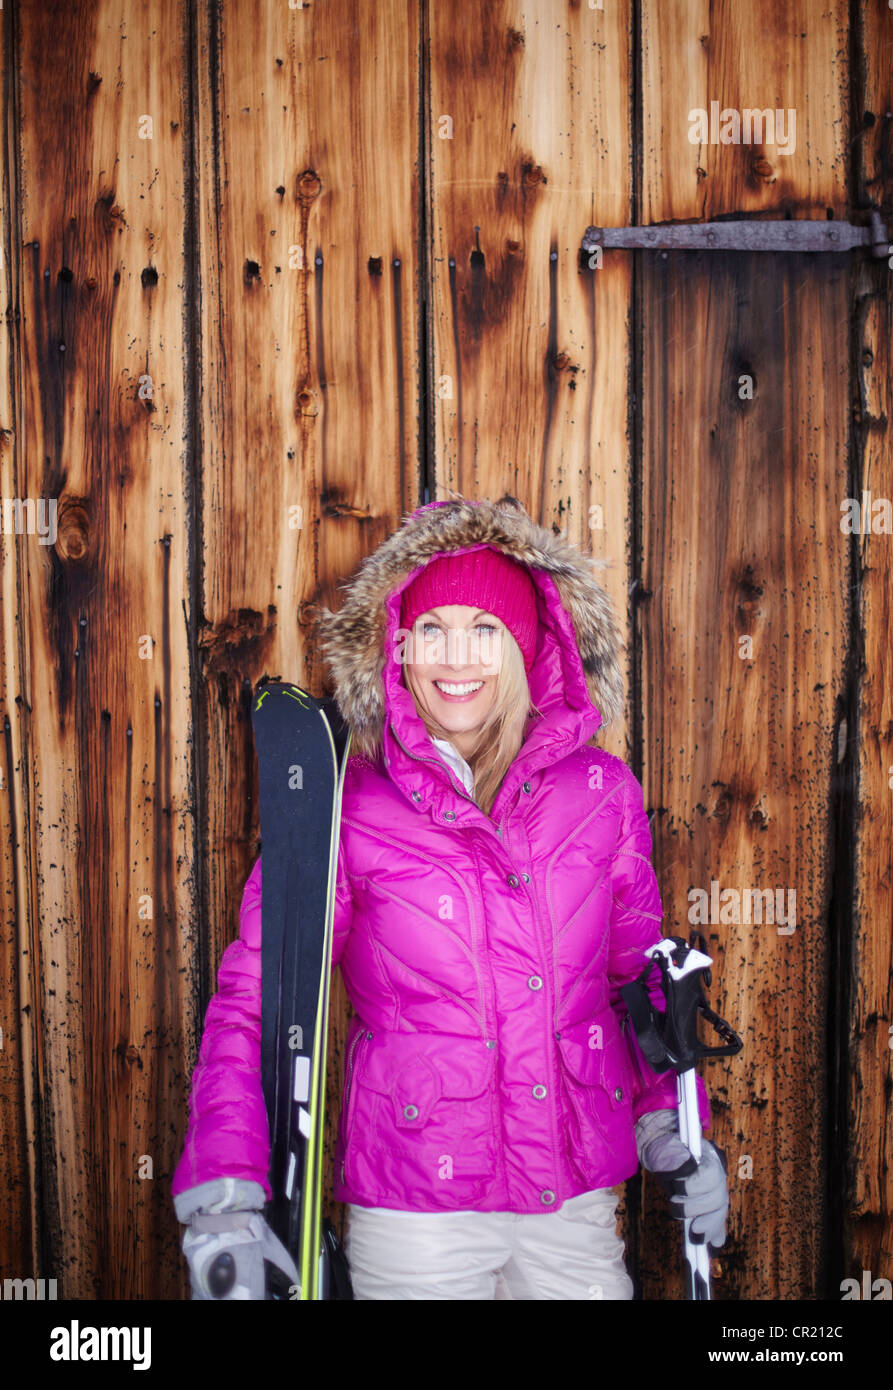 Femme debout avec skis et bâtons Banque D'Images